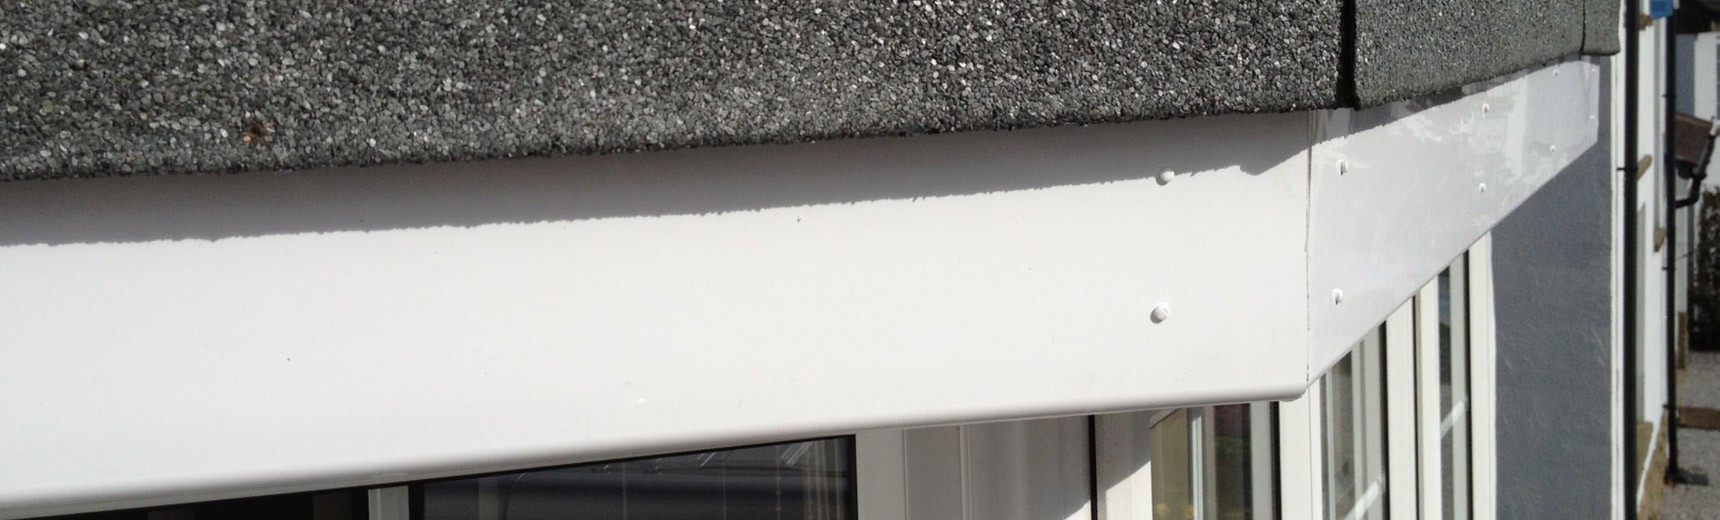 Leicester roofline repairs